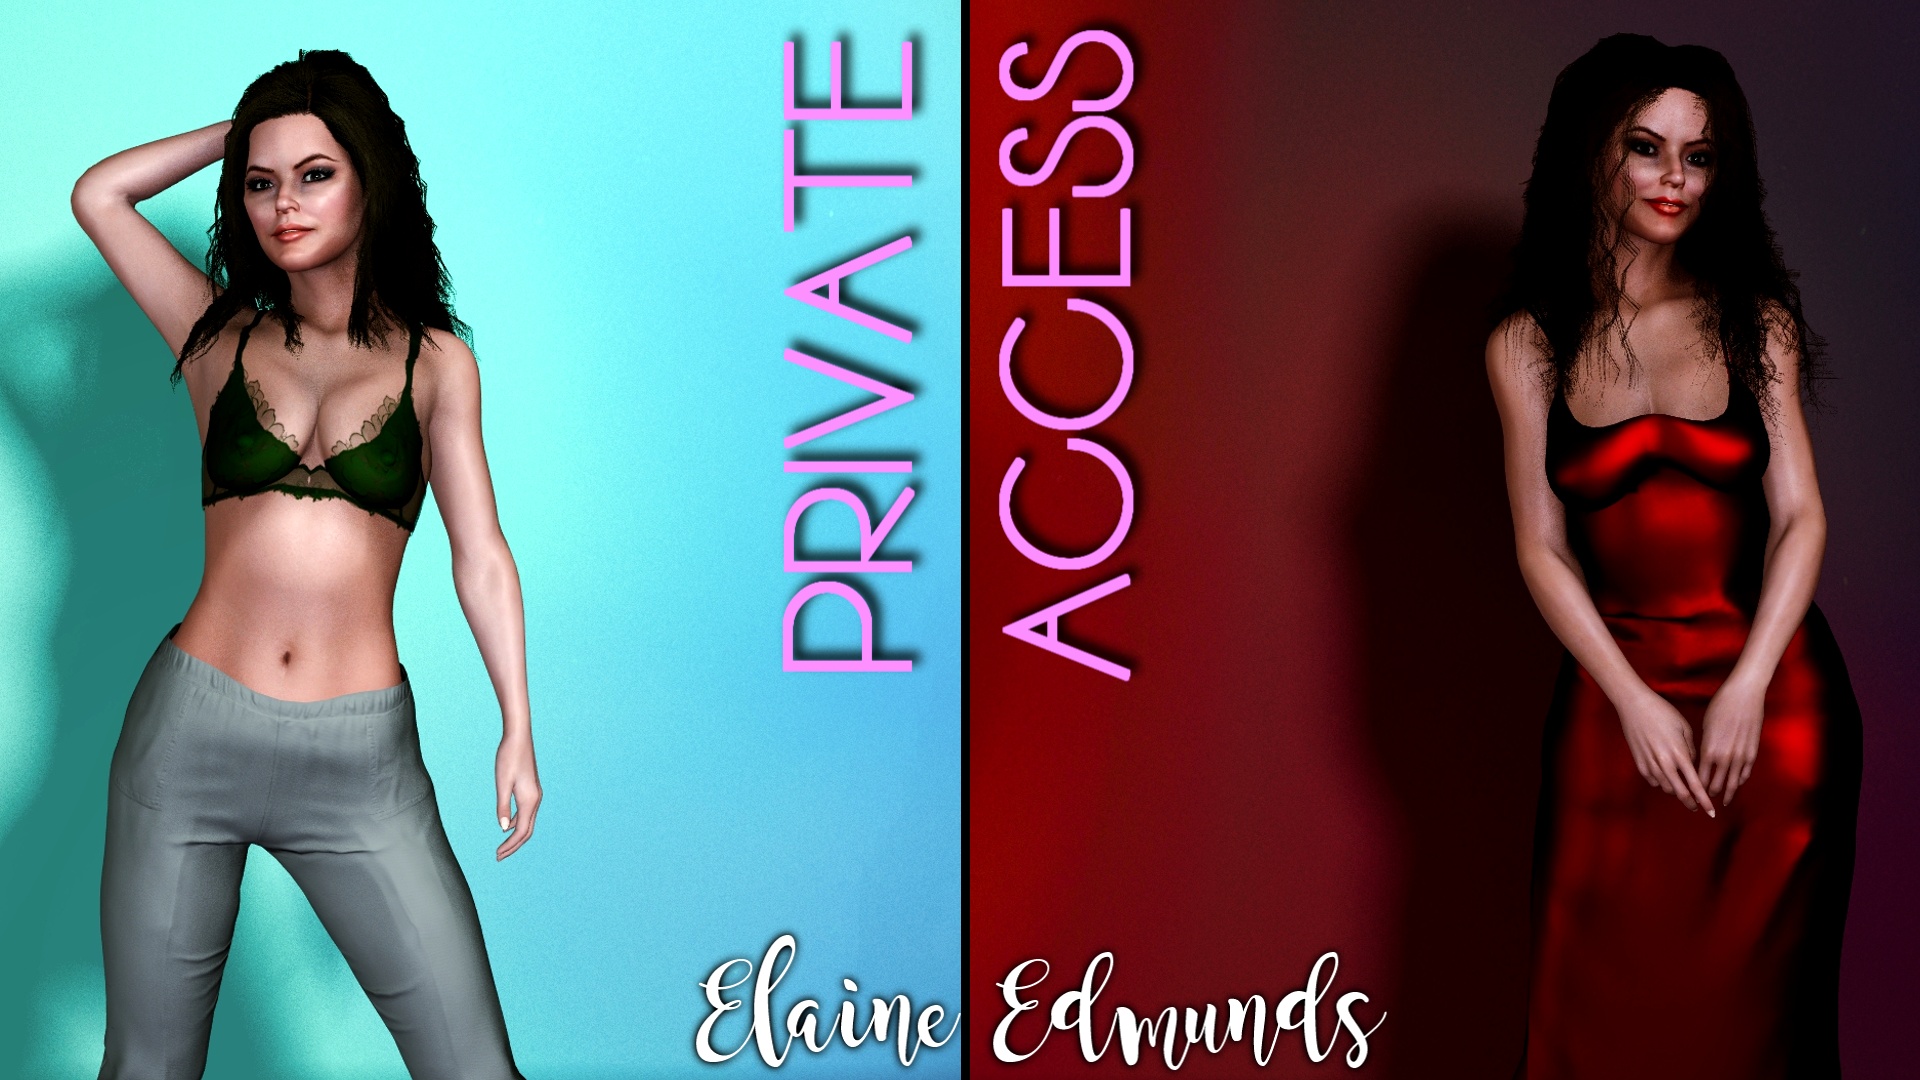 Private Access Promo Pic 2 of 7